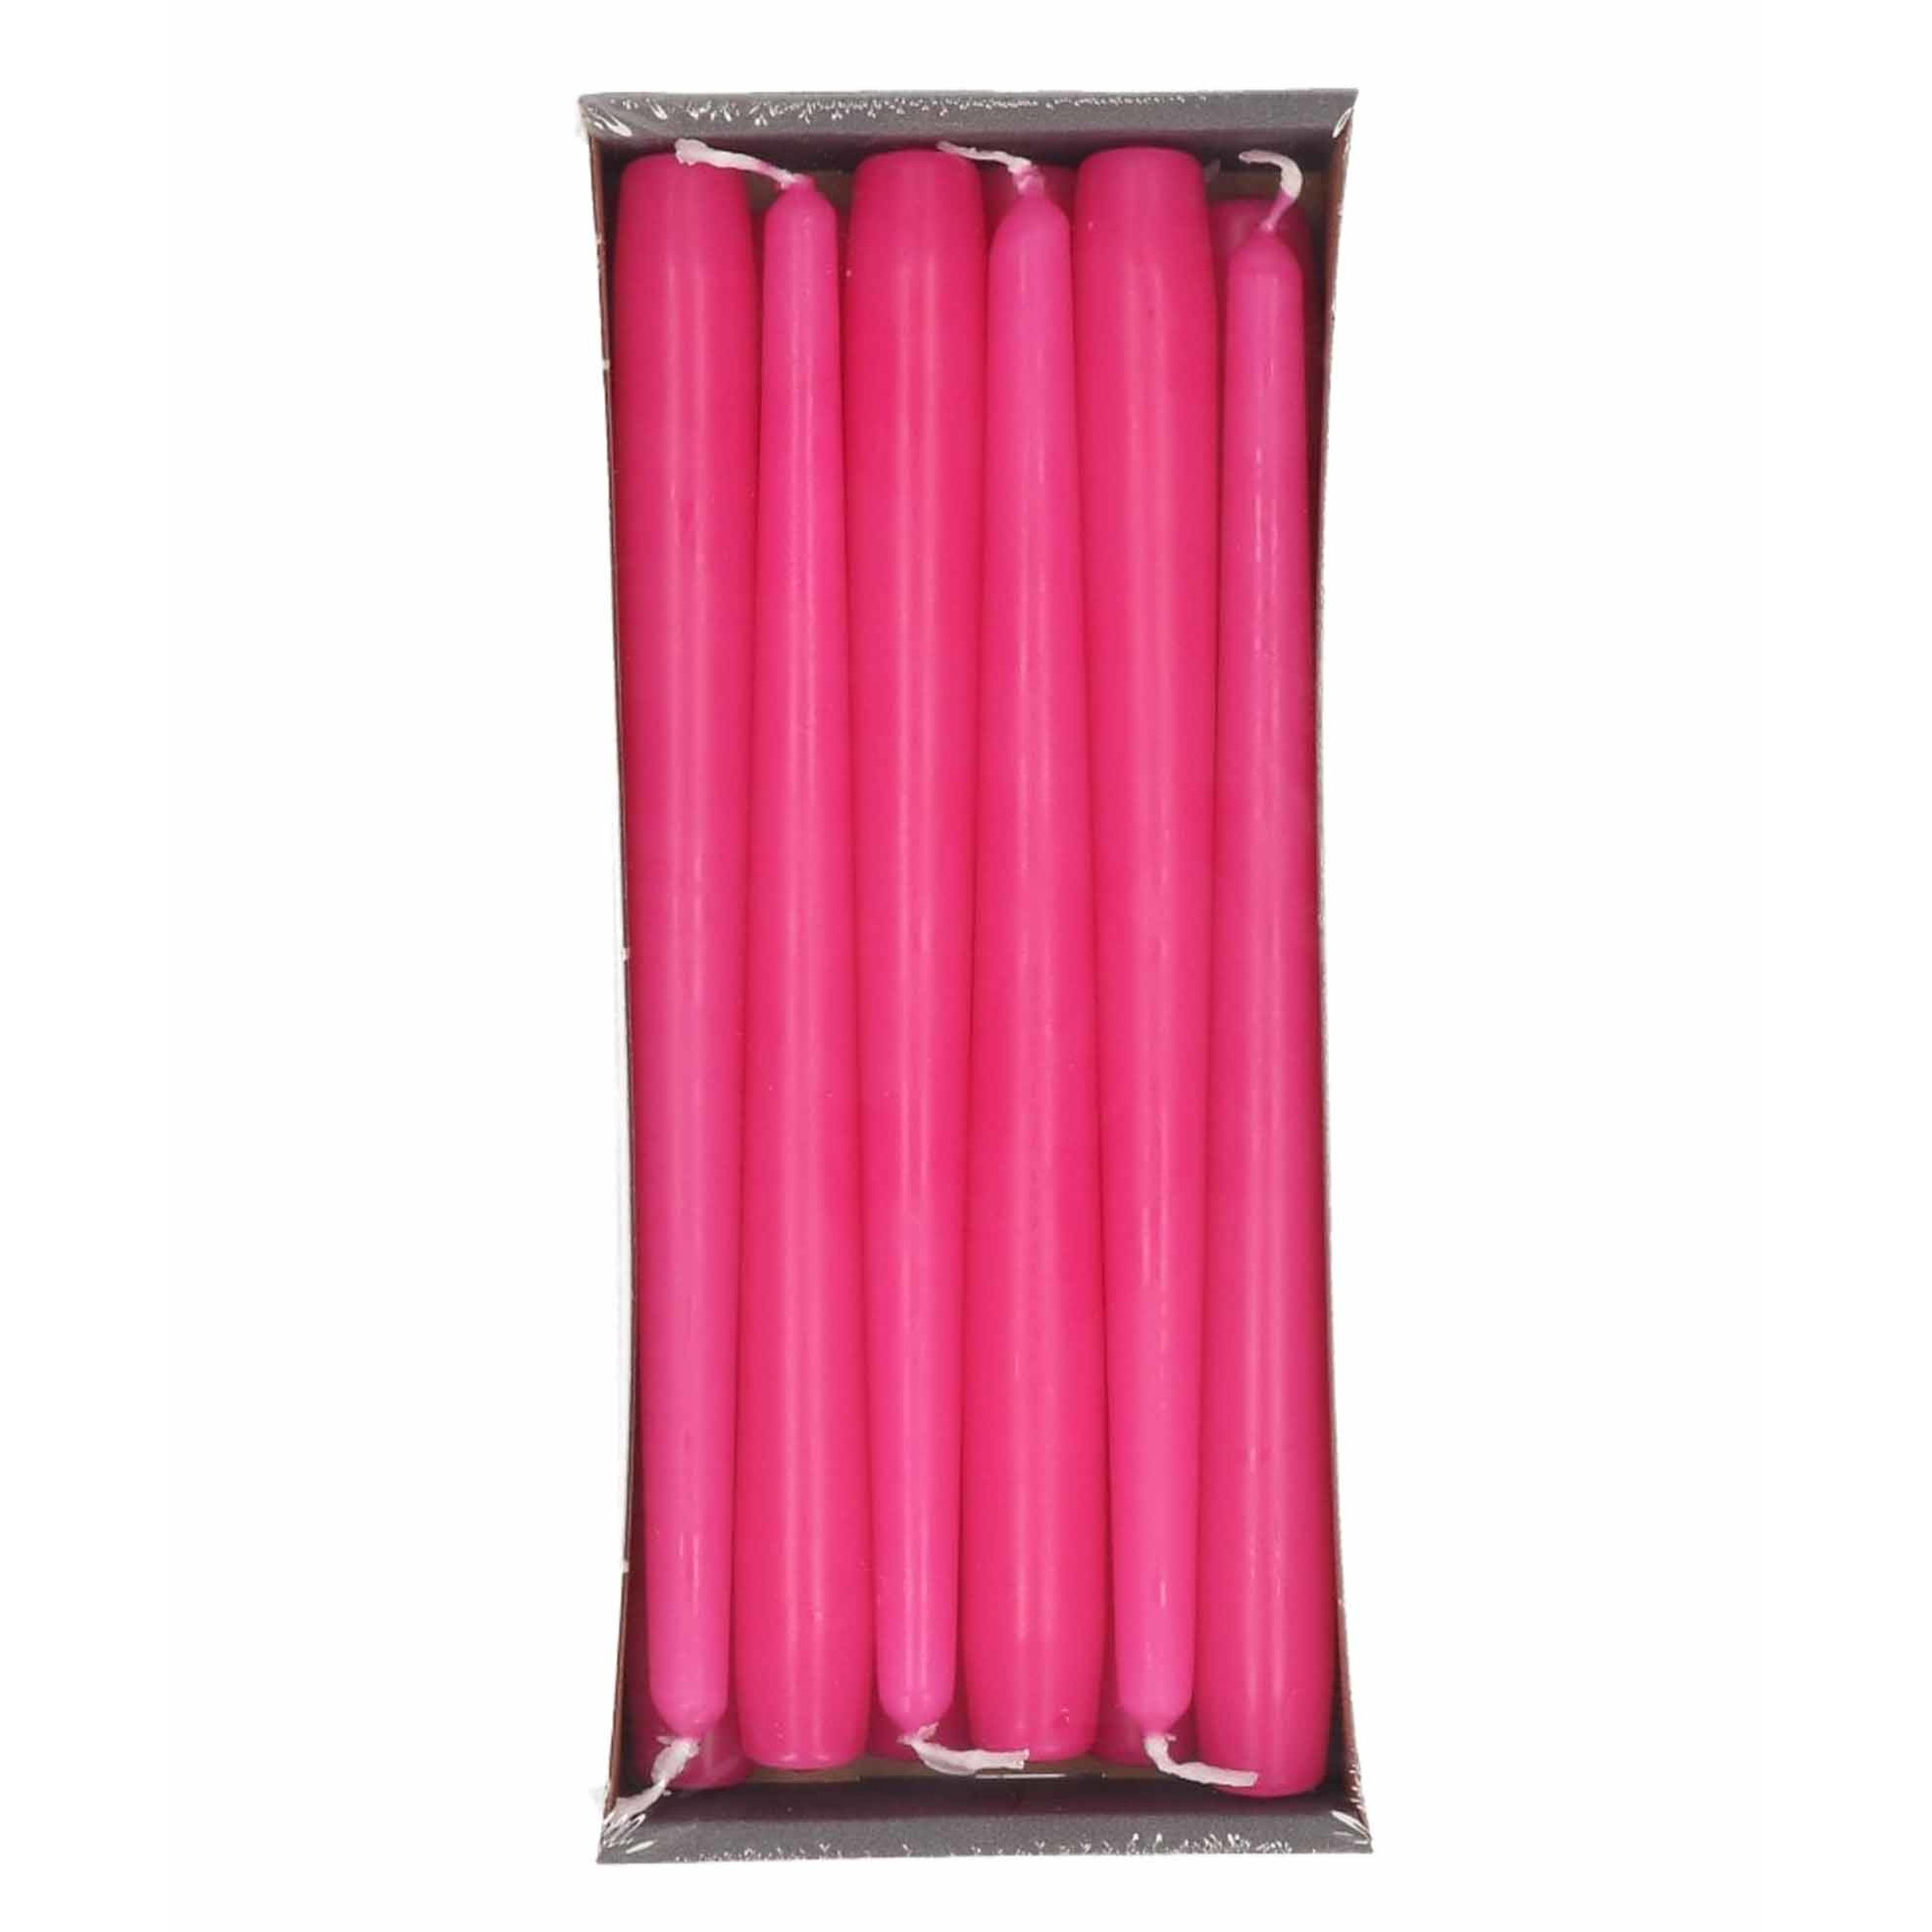 12x Lange kaarsen fuchia roze 25 cm 8 branduren dinerkaarsen/tafelkaarsen